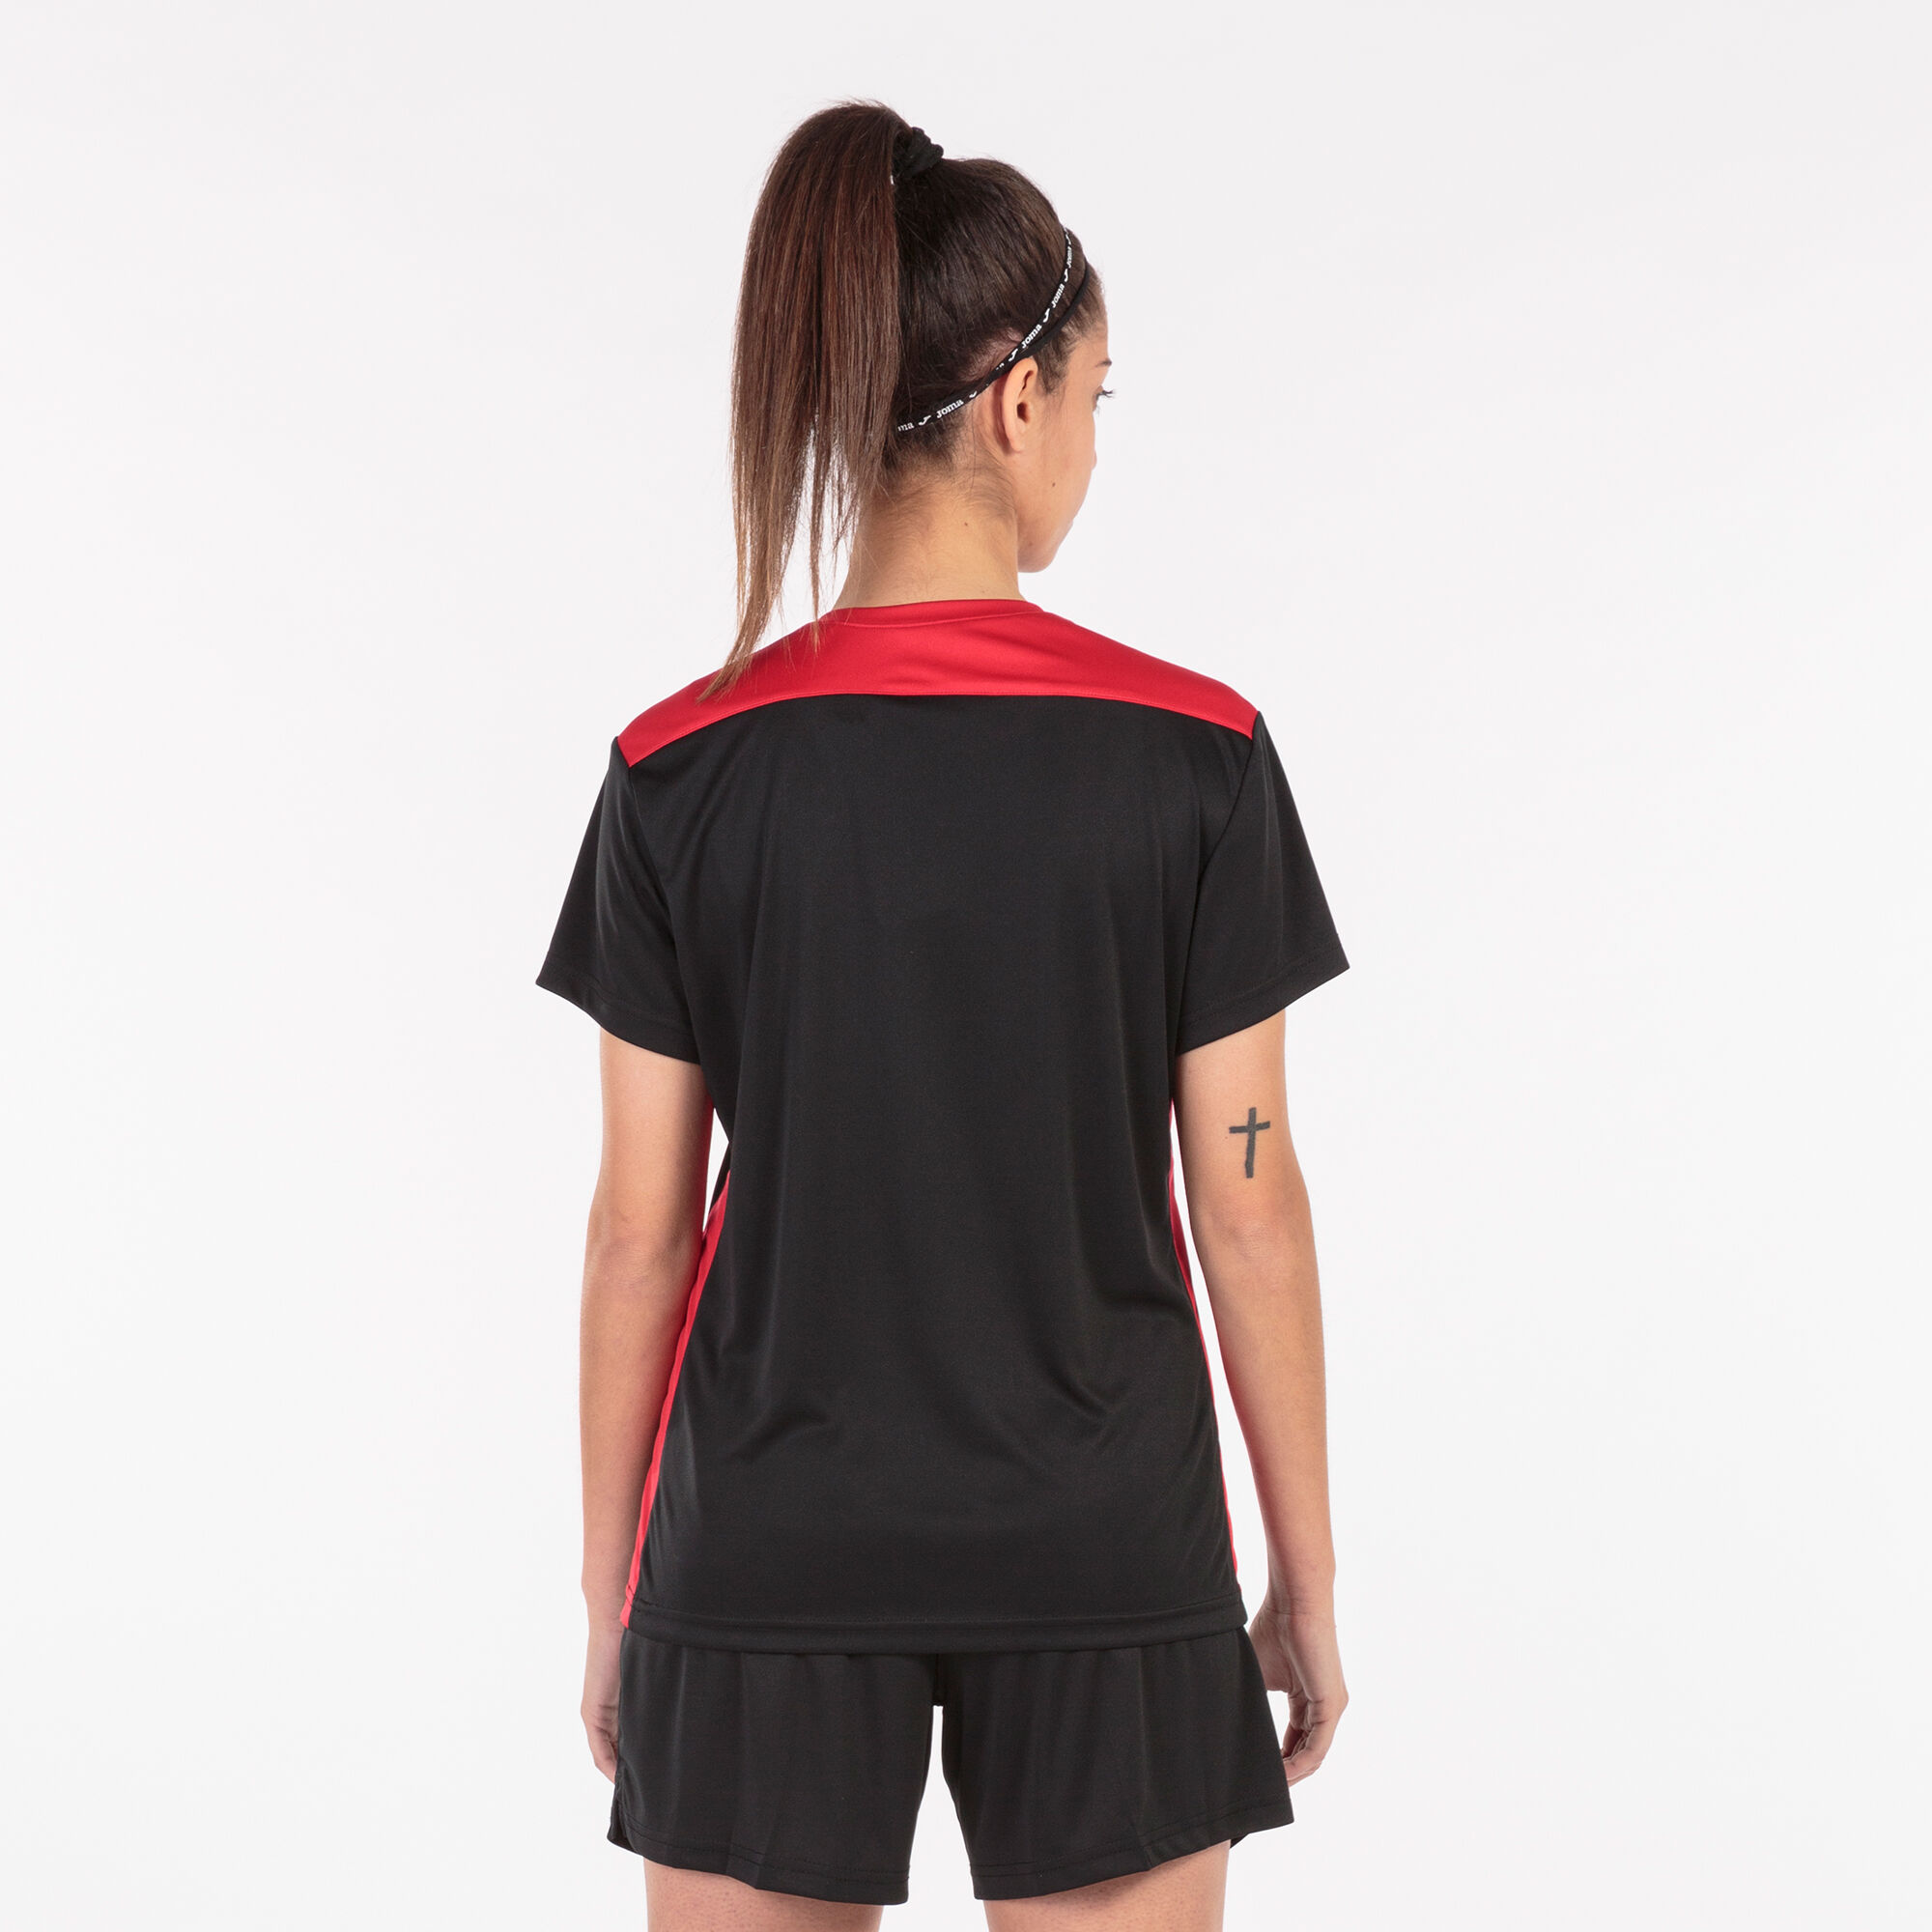 Camiseta manga corta mujer Championship VI negro rojo